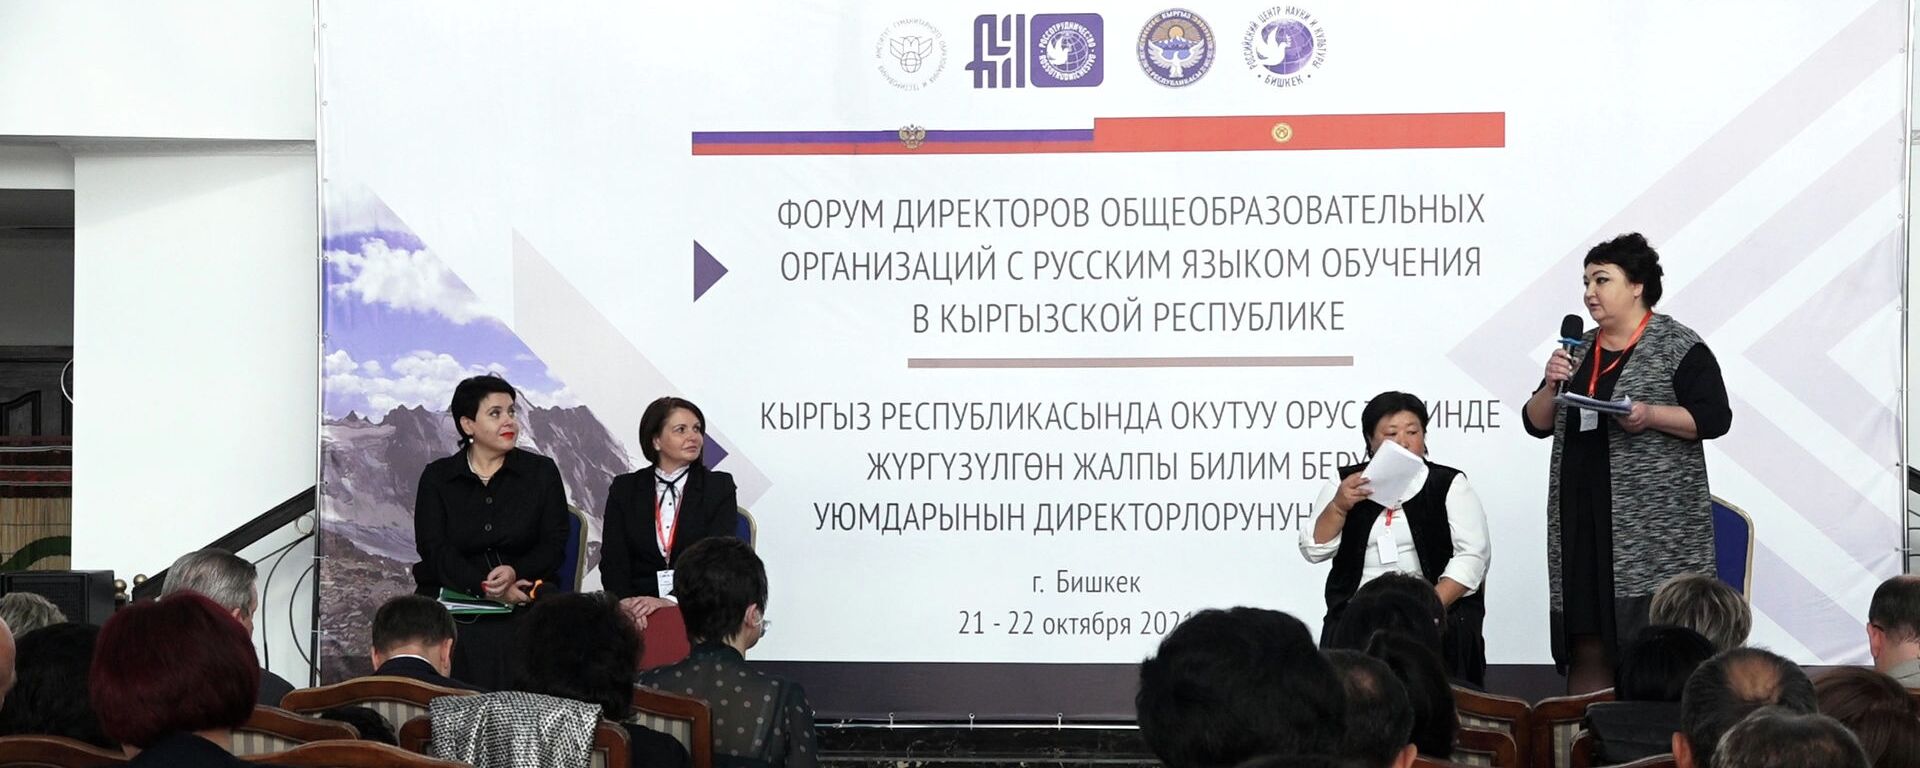 В Бишкеке проходит крупный форум с участием специалистов из России. Видео - Sputnik Кыргызстан, 1920, 21.10.2021